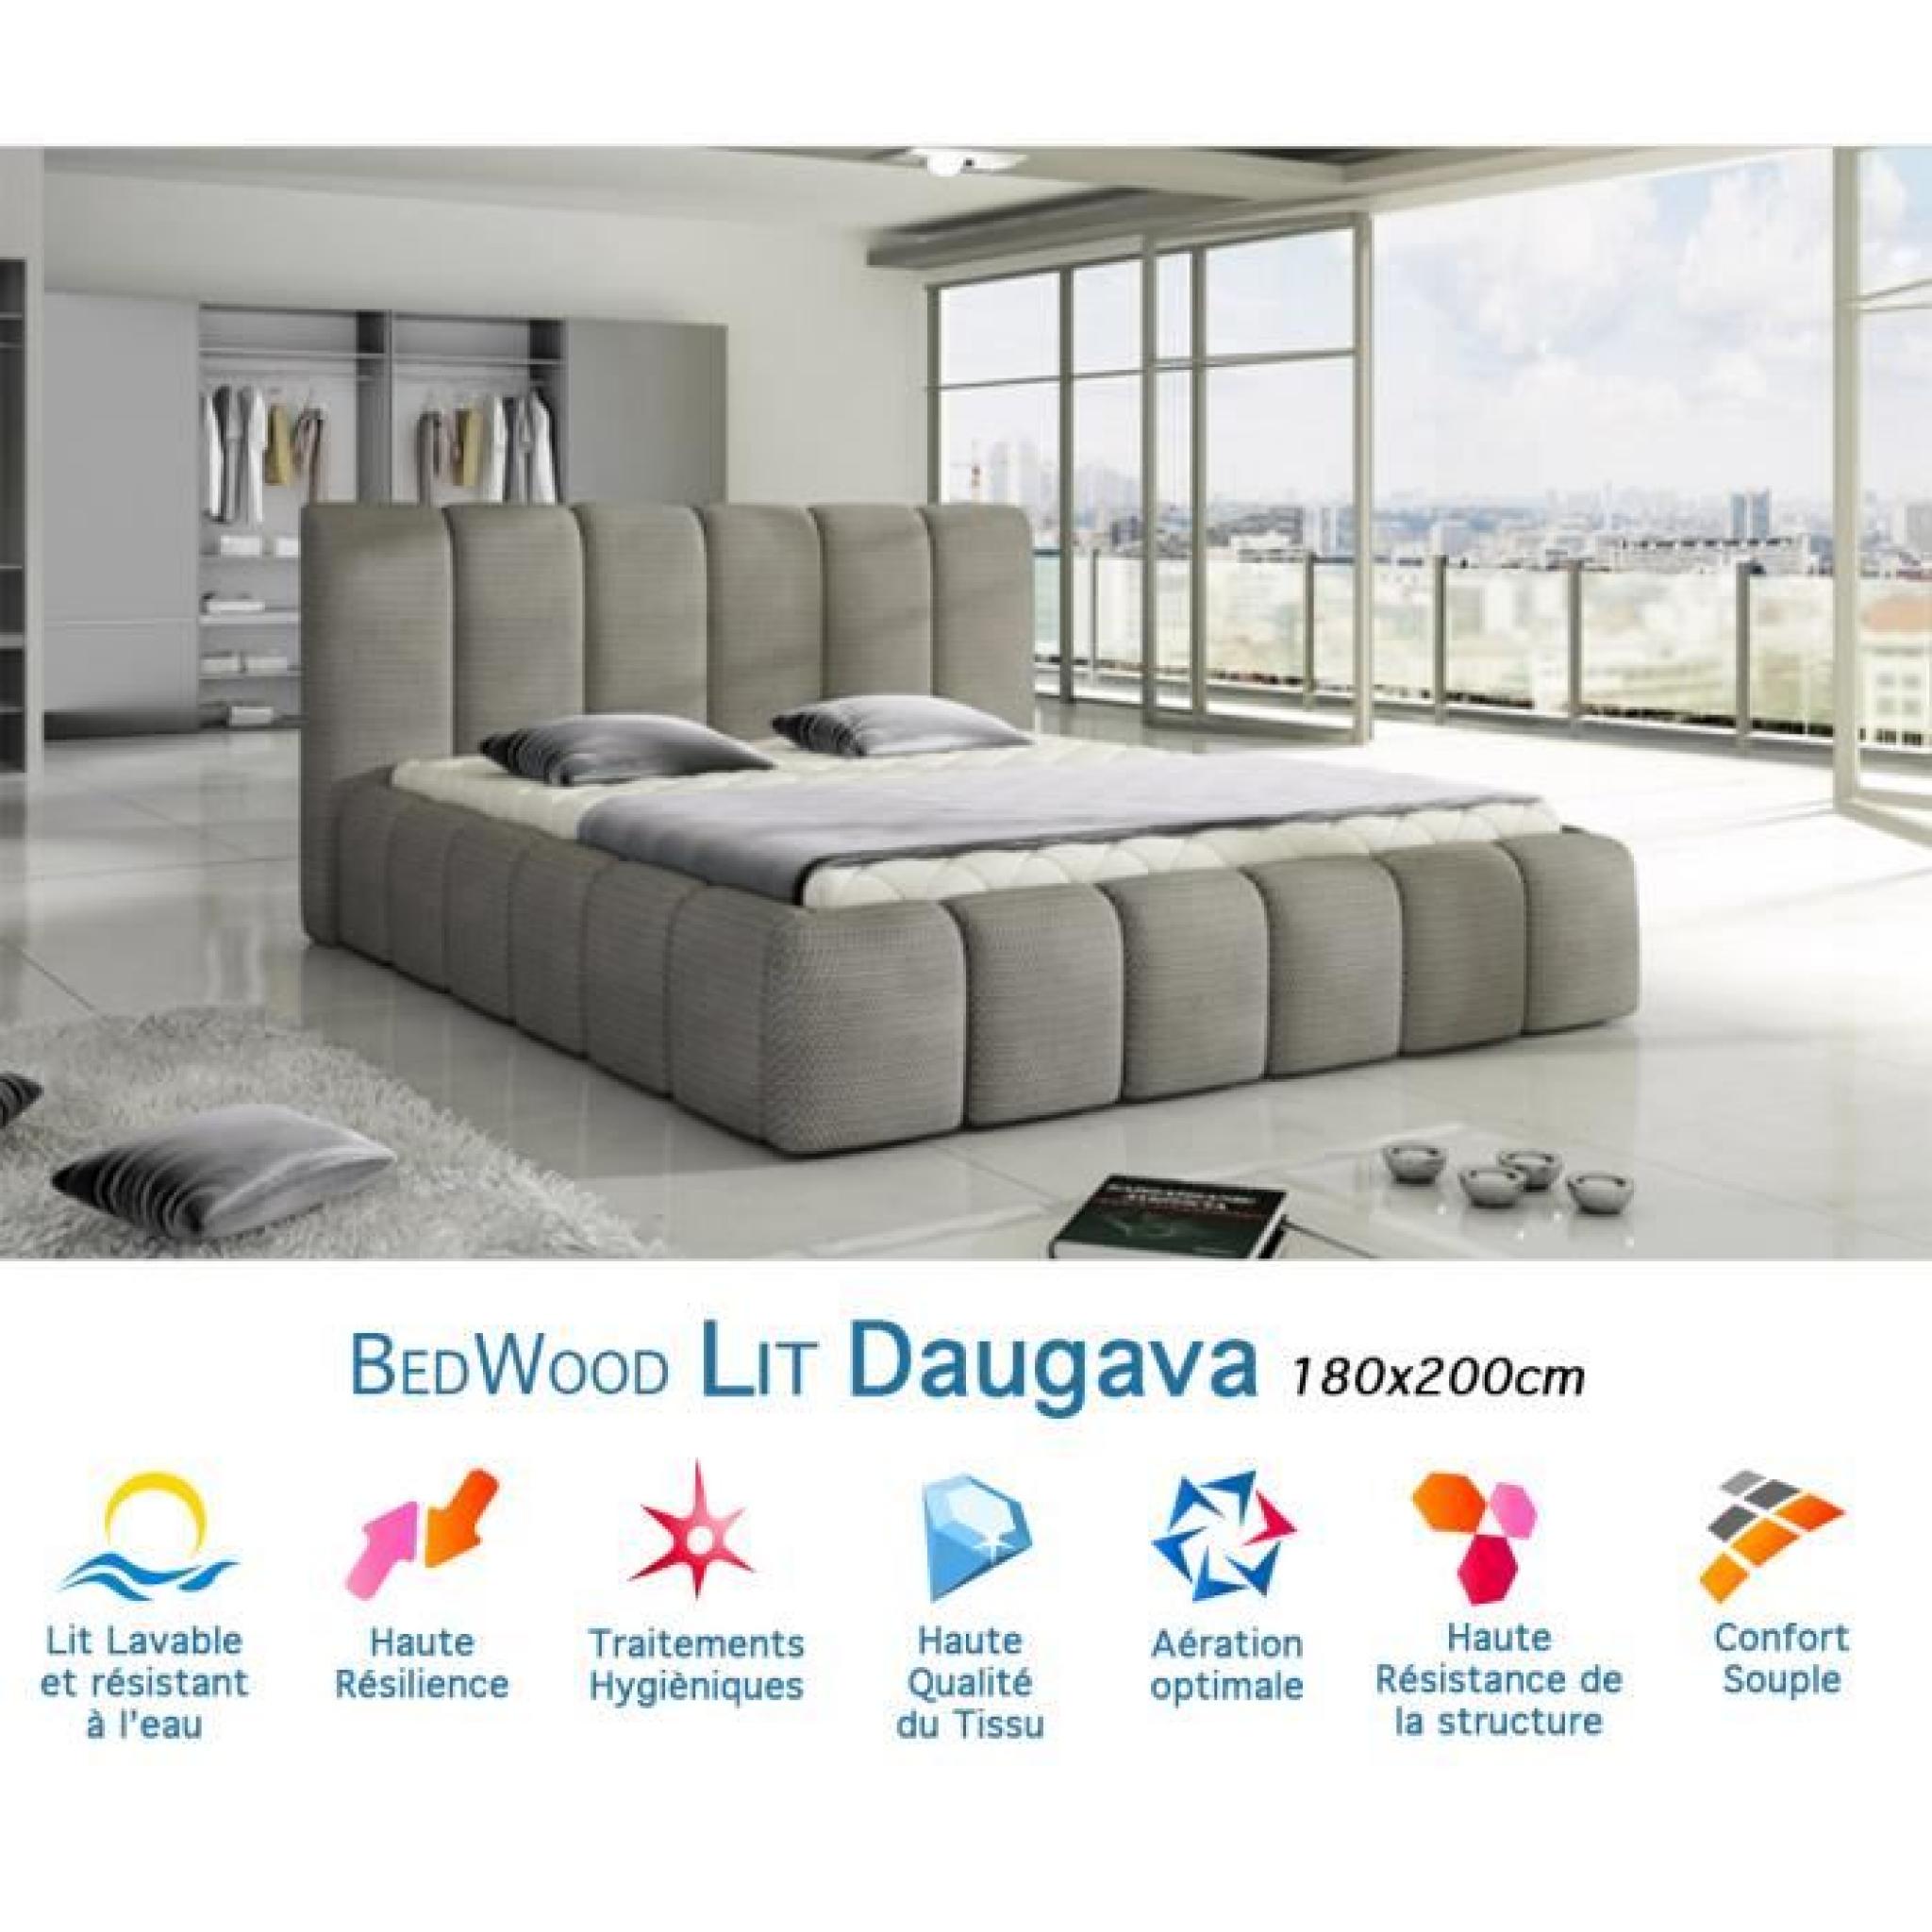 Lit Design Bedwood Daugava 180x200cm